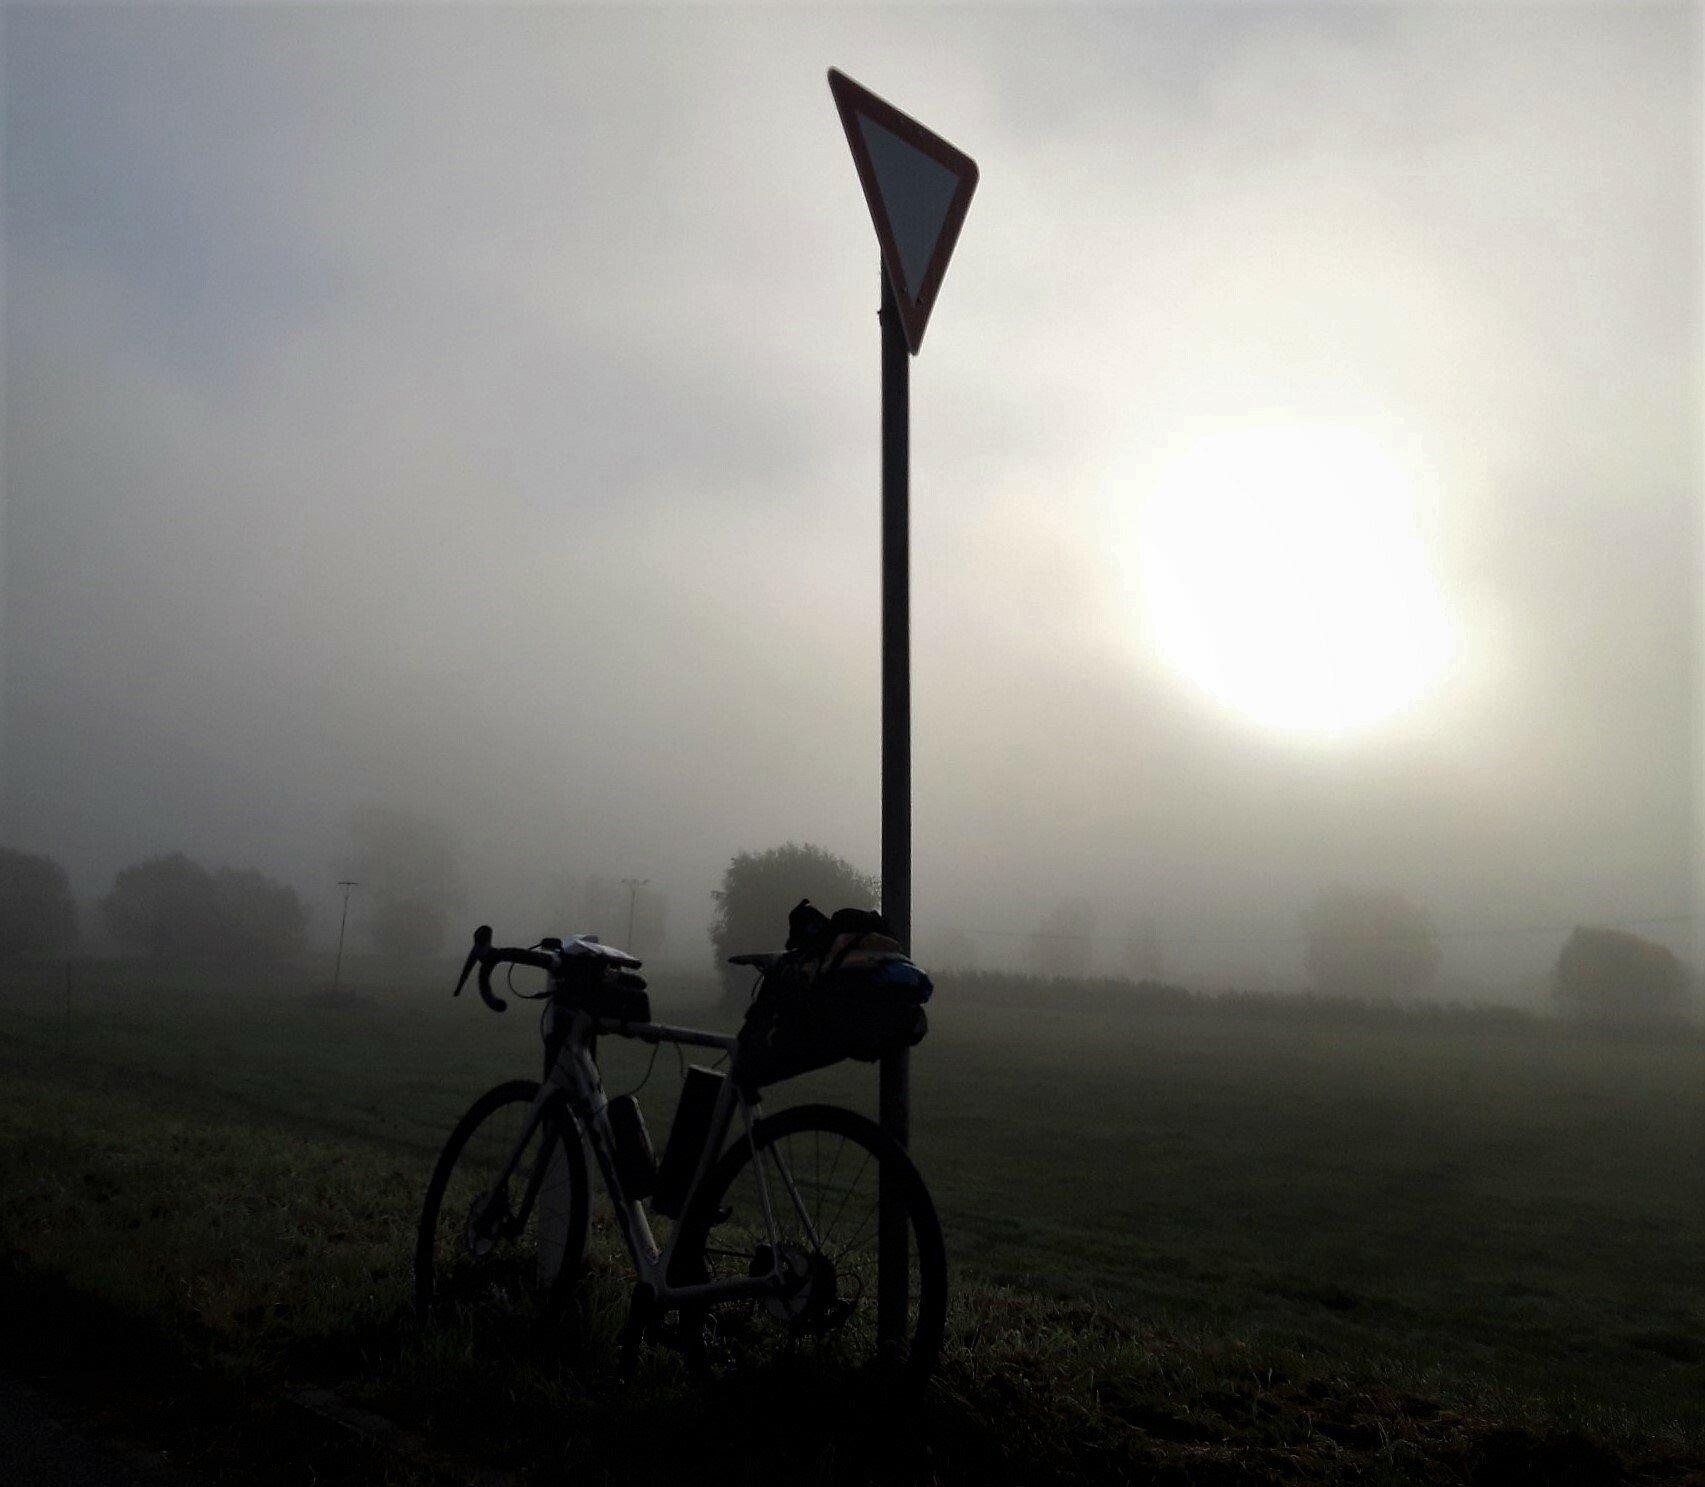 Das Fahrrad lehnt an einem „Vorfahrt-achten“-Schild. Straße, Felder und Baumgruppen sind von Nebel umhüllt, durch den sich eine grellweiße Sonne zu brennen versucht.